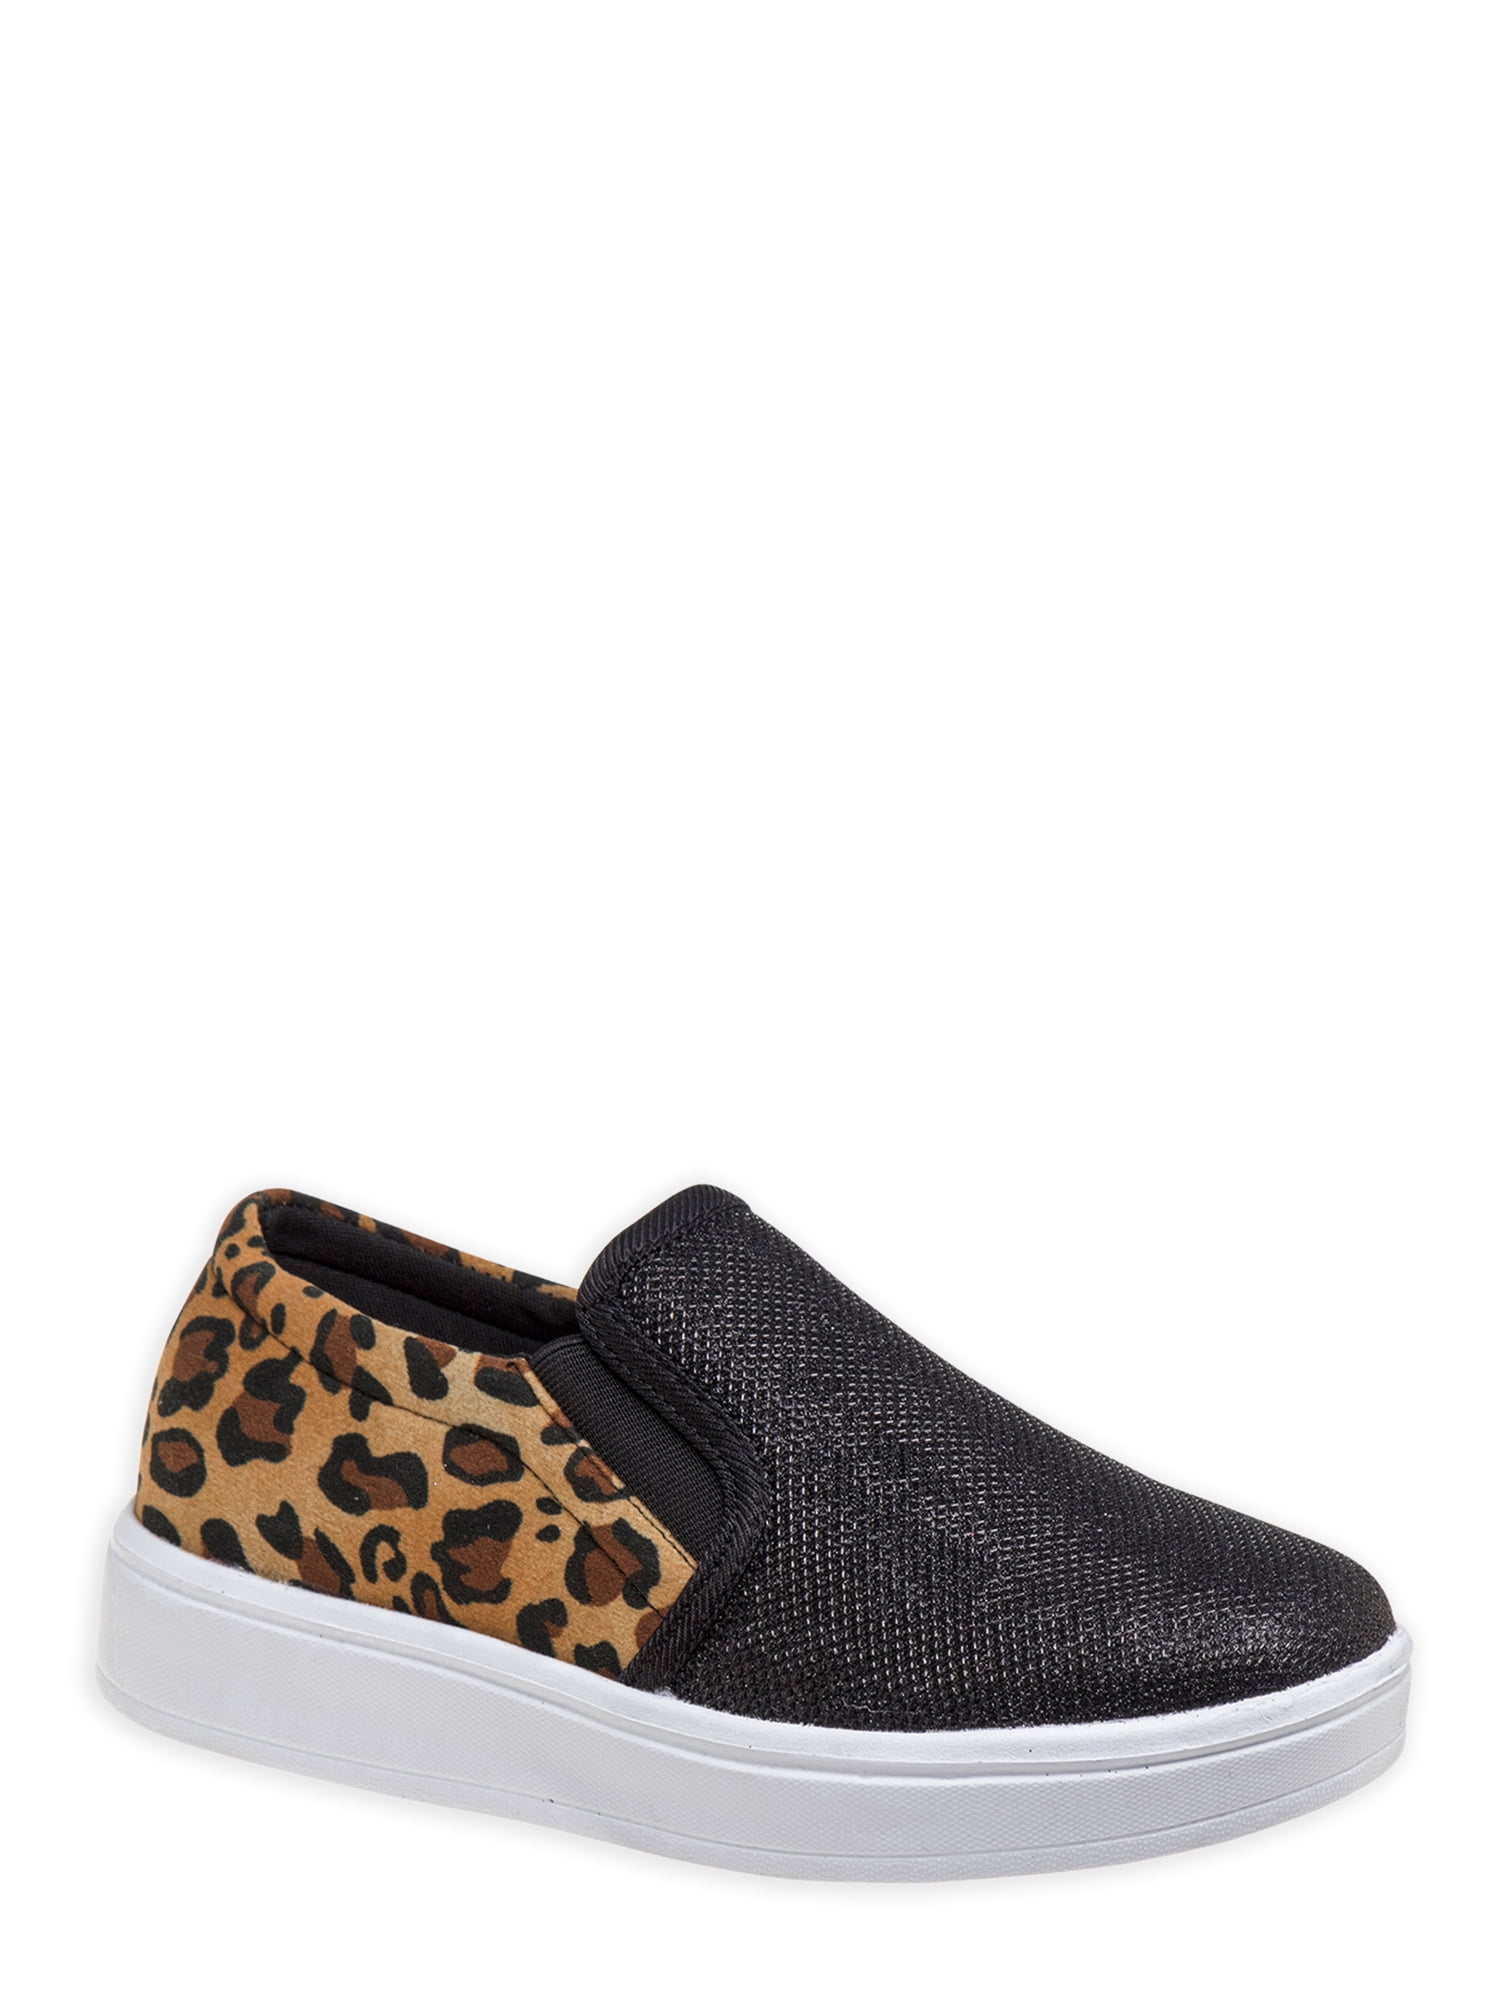 Kids Leopard Print Shoes